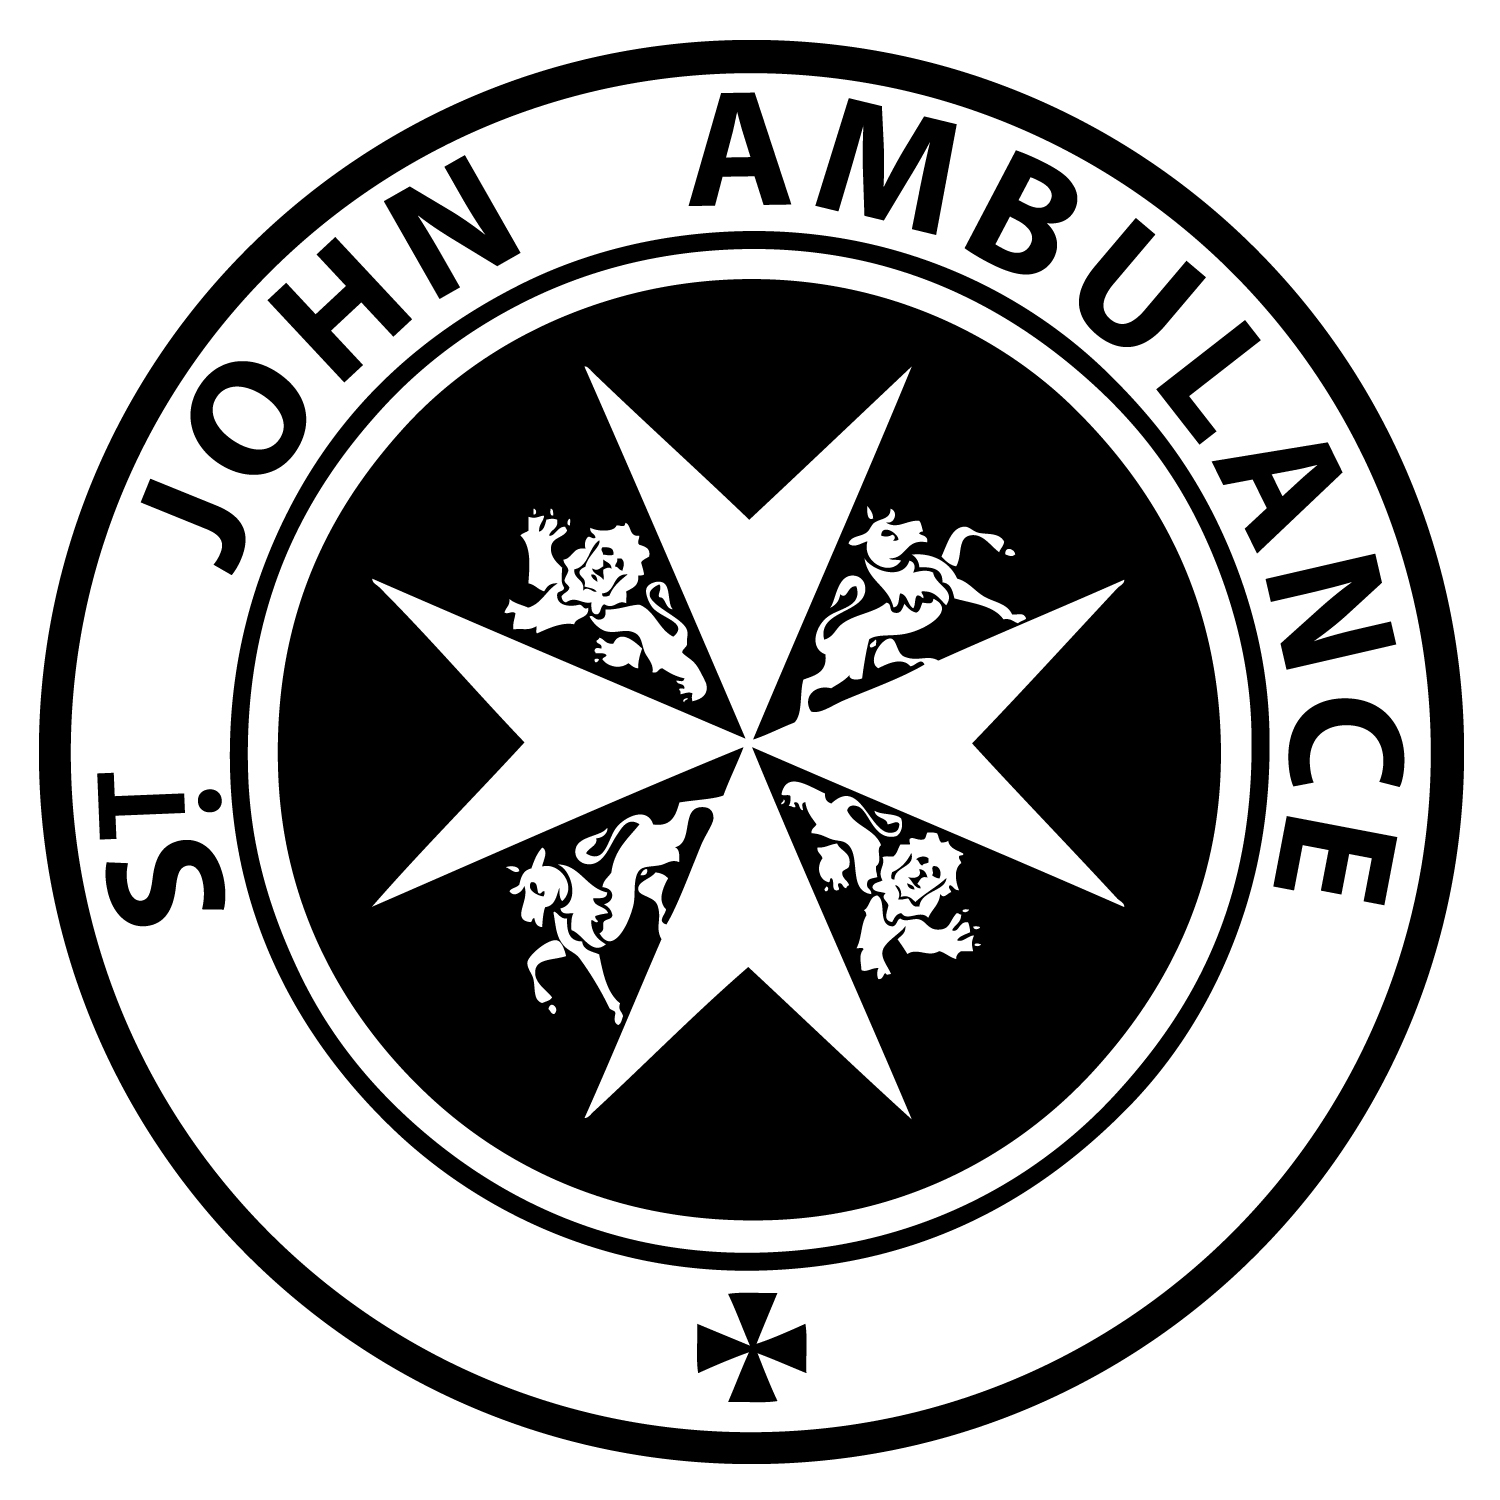 st__john_ambulance_vector_logo_by_sudoball-d3g2k2k